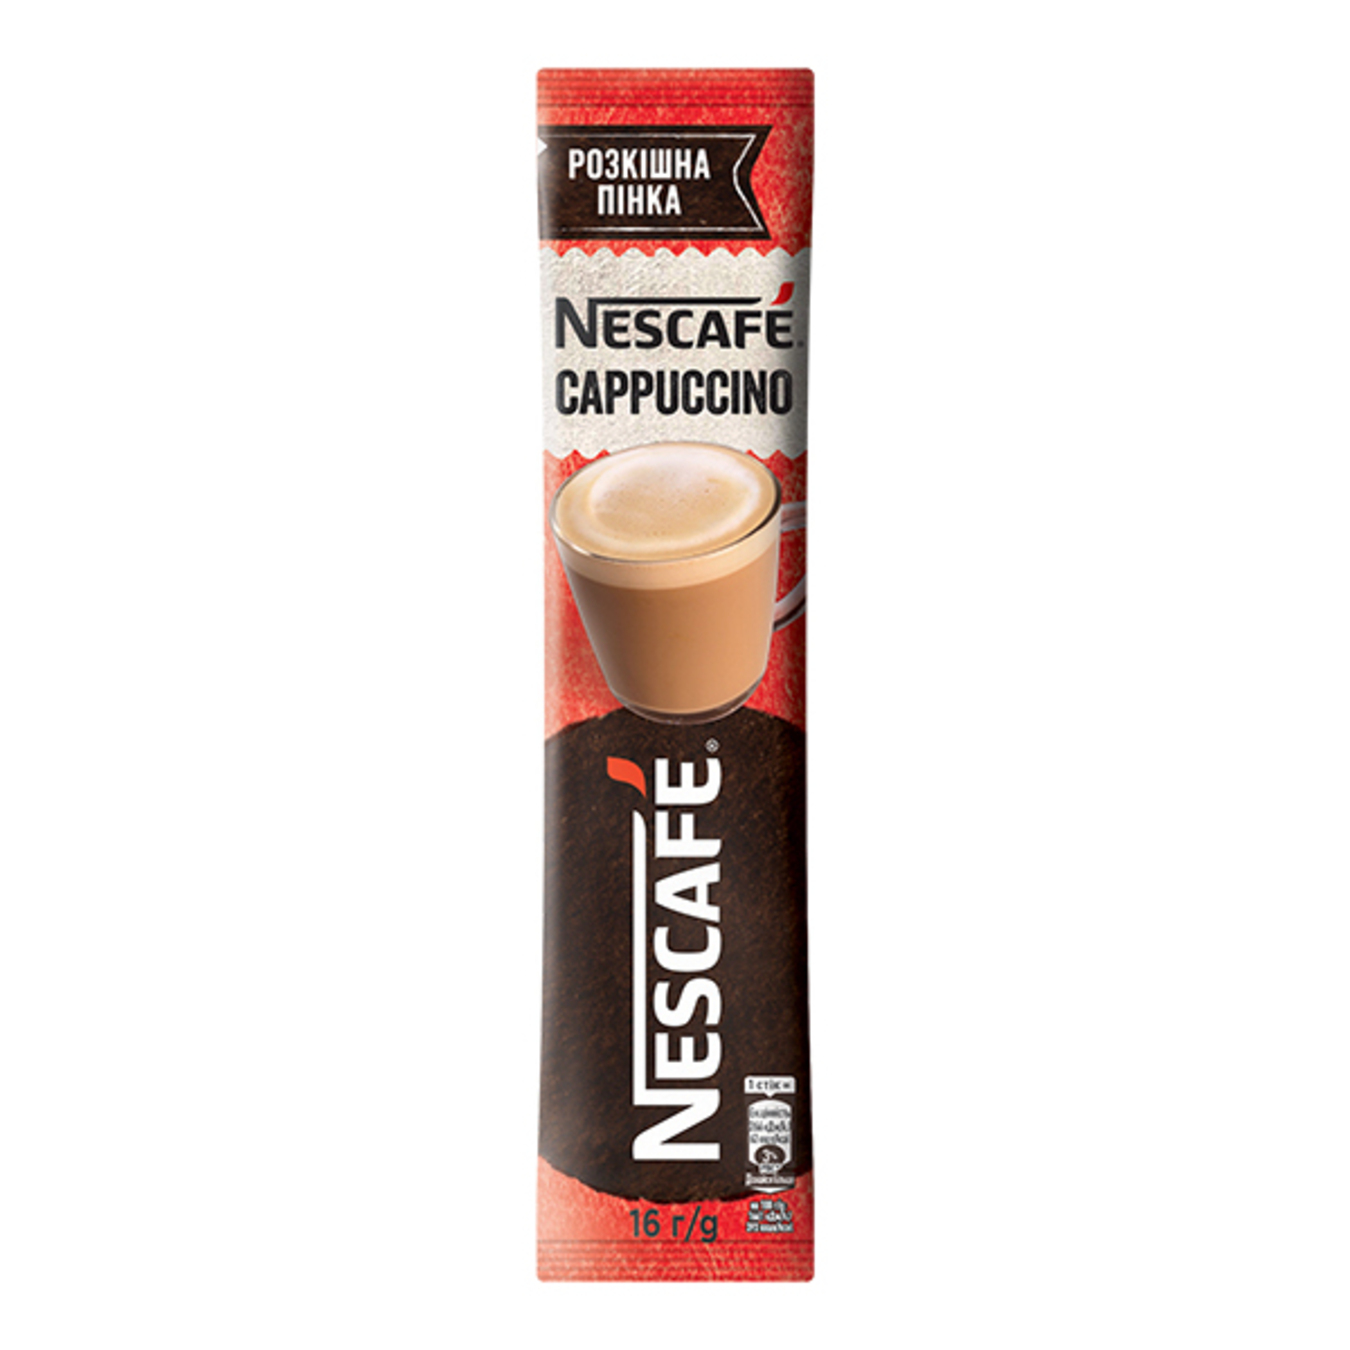 Nescafe Cappuccino Instant Coffee 16g